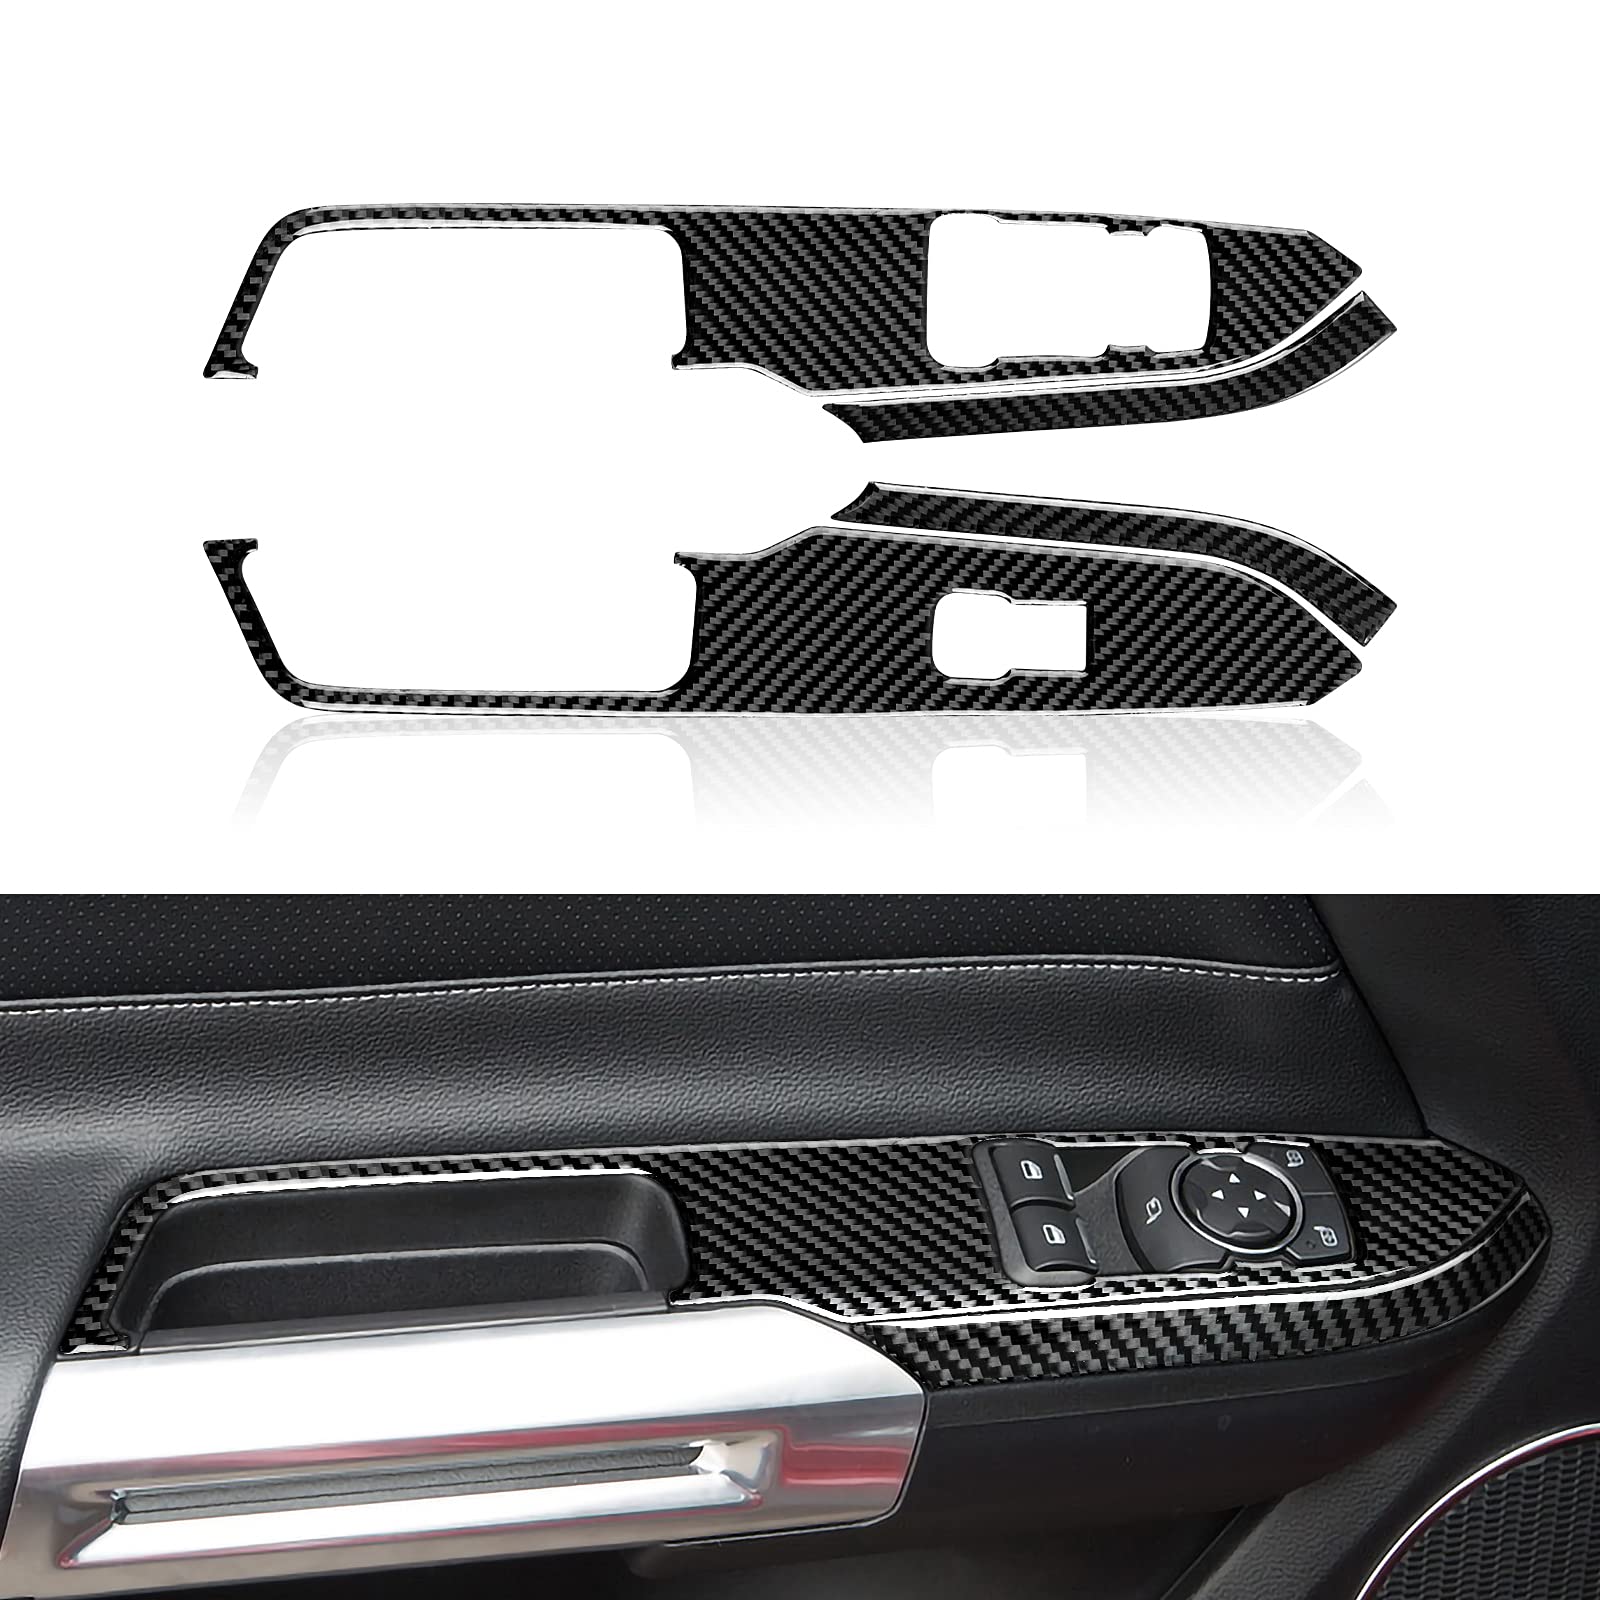 2PCS Fensterheber Schalter Panel Rahmen Aufkleber Kohlefaser Sticker Abdeckung Kompatibel Mit Ford Mustang GT 2015 2016 2017 2018 2019 2020 Zubehör von OYDDL